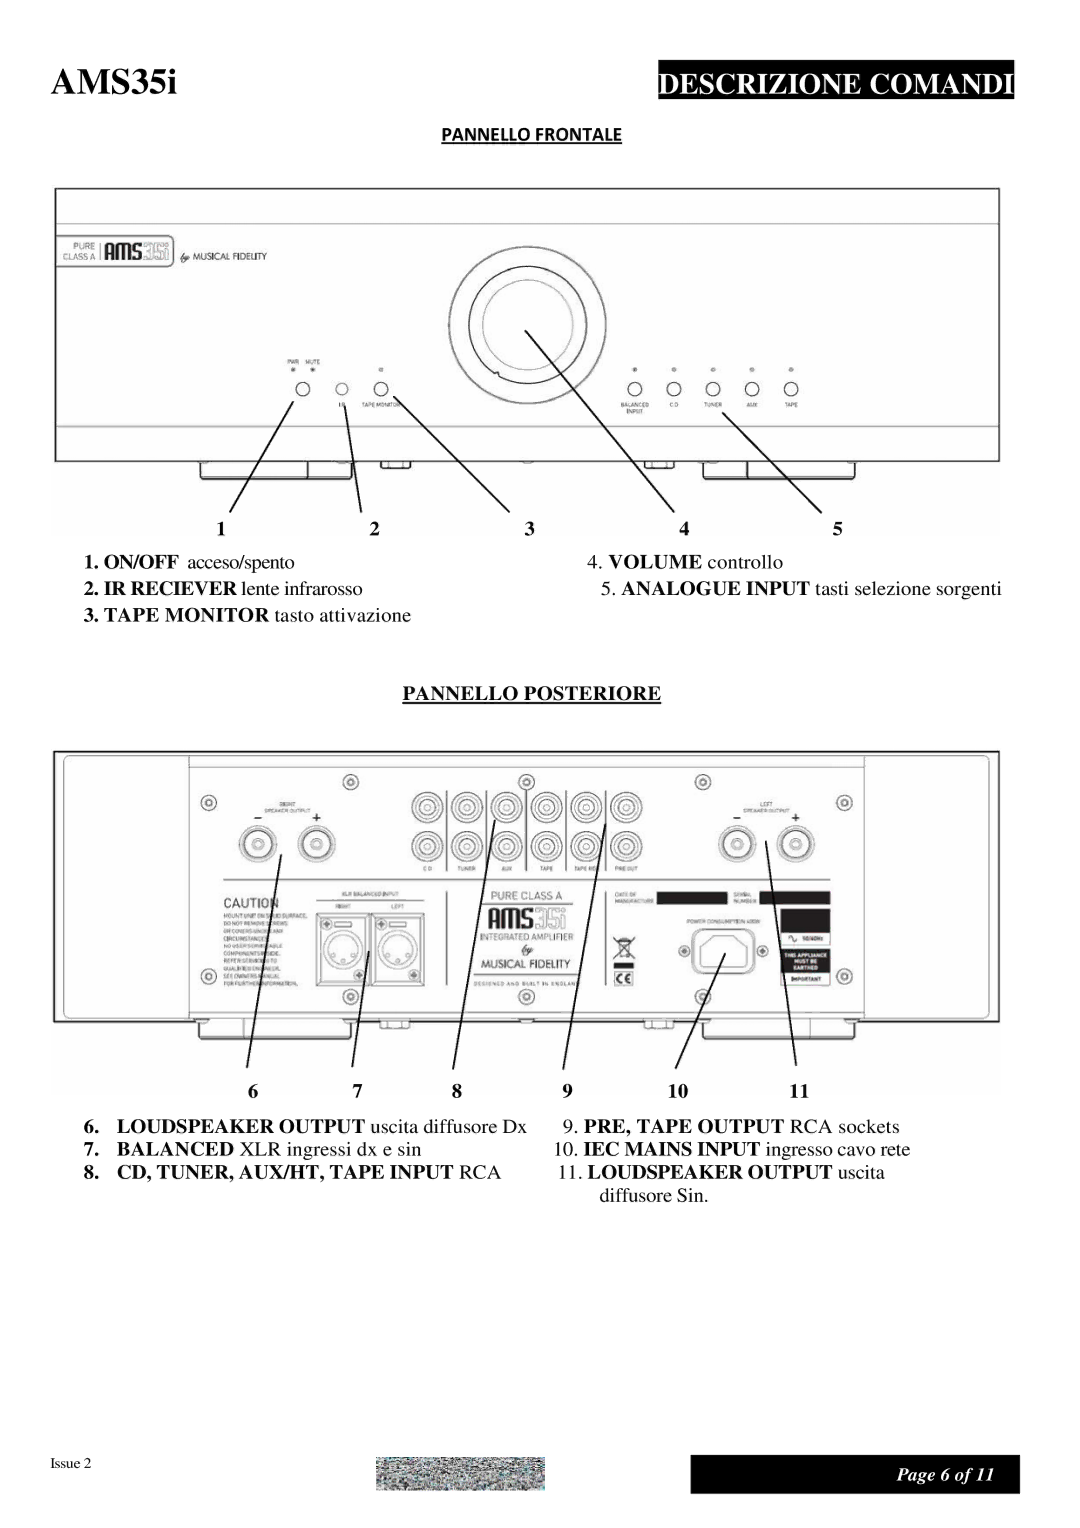 Musical Fidelity AMS35I manual Descrizione Comandi, Pannello Posteriore 